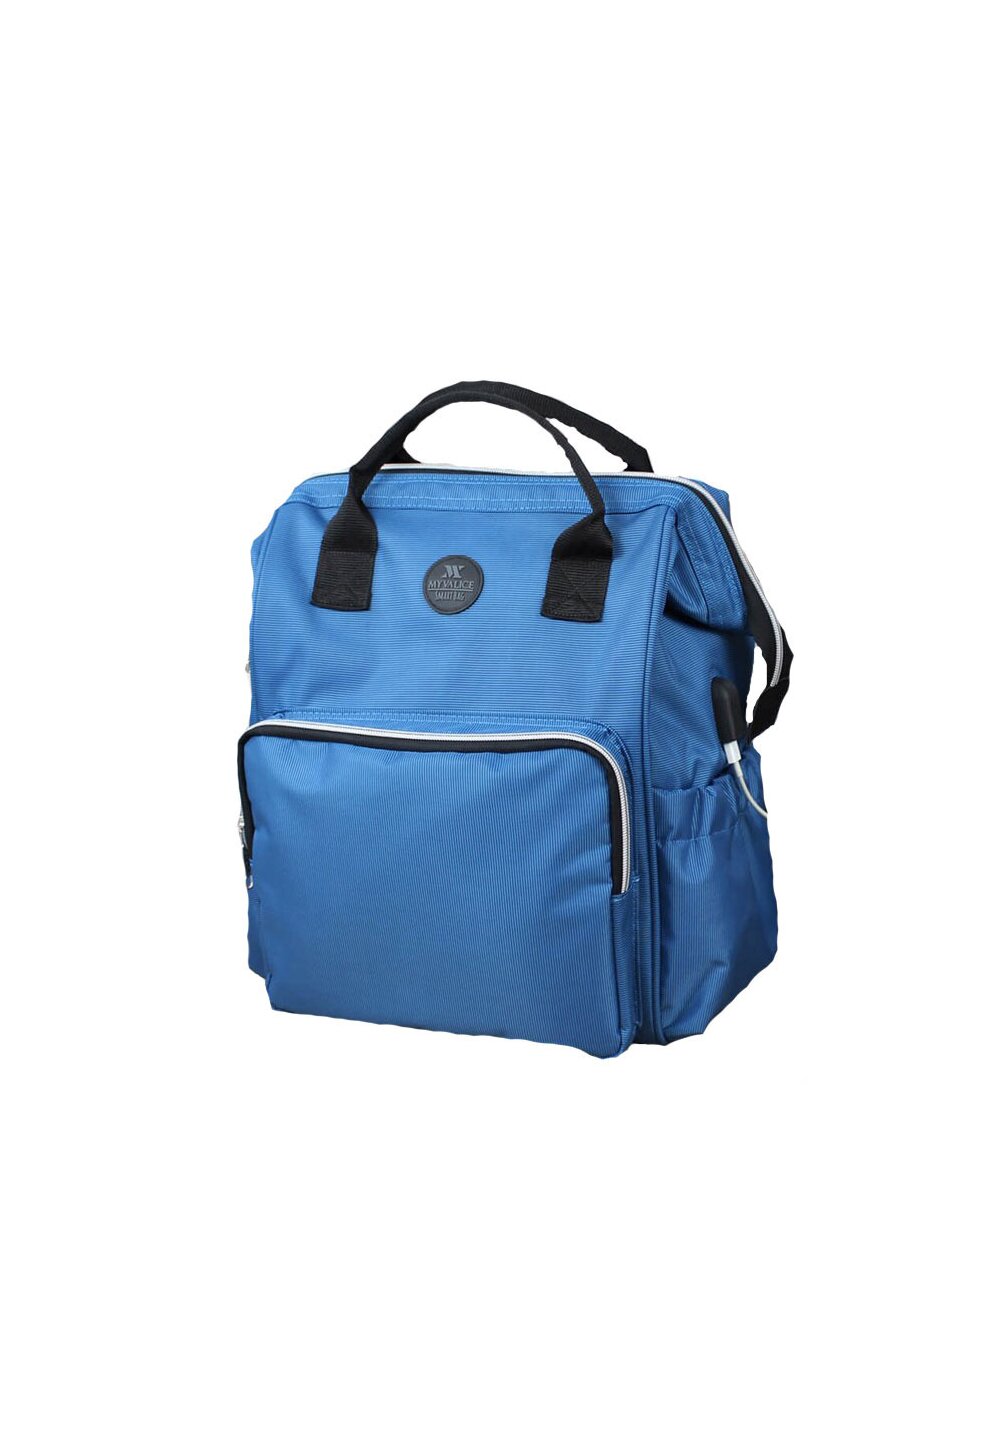 Rucsac pentru mamici, cu mufa USB, Smart Bag, albastru Prichindel